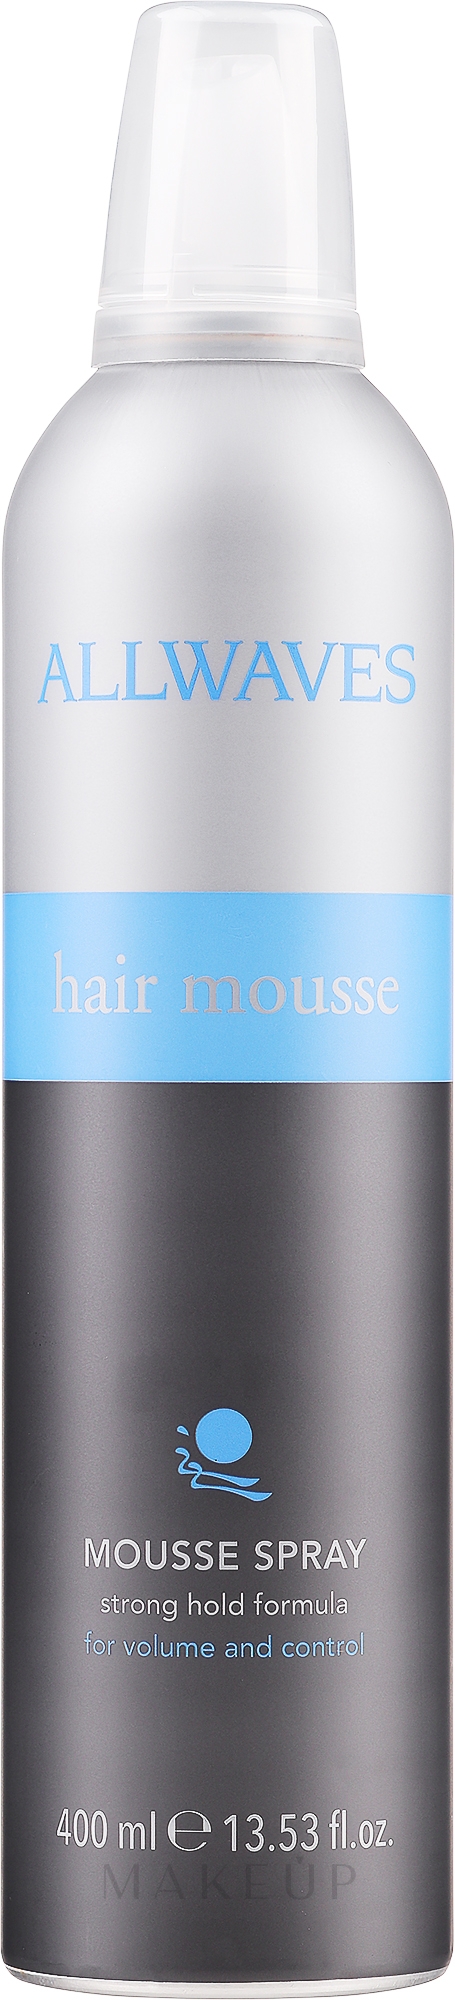 Modellierende Haarmousse Spray für Volumen - Allwaves Hair Mousse Spray — Foto 400 ml